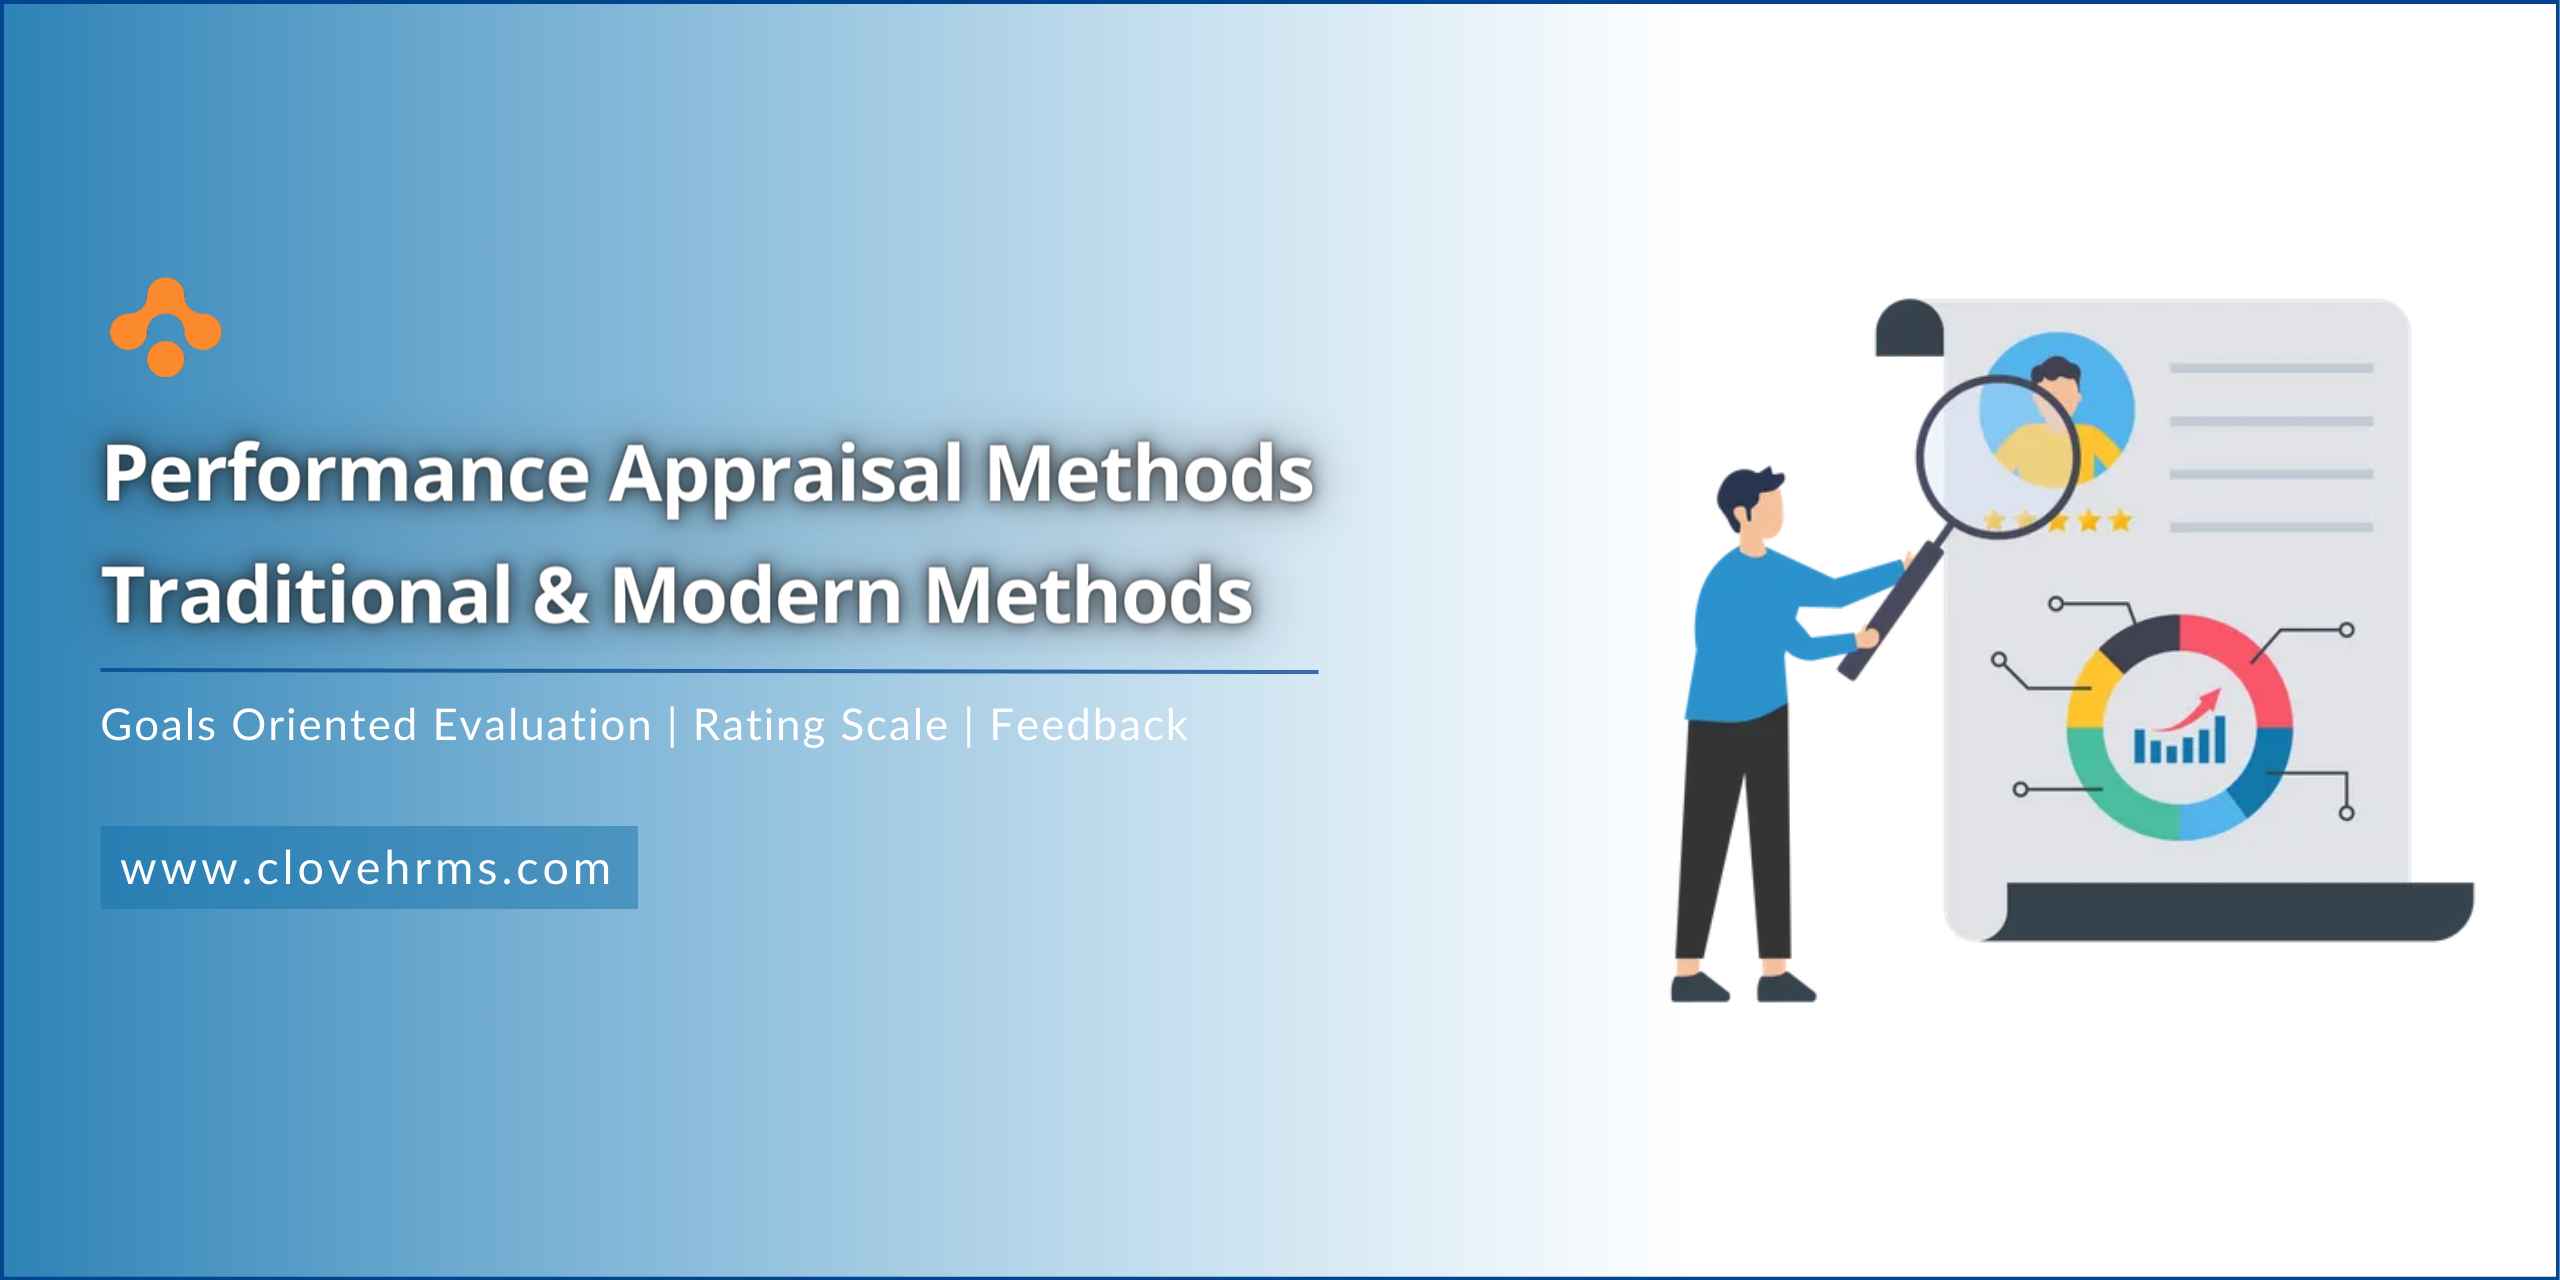 Hero image for performance Appraisal methods blog